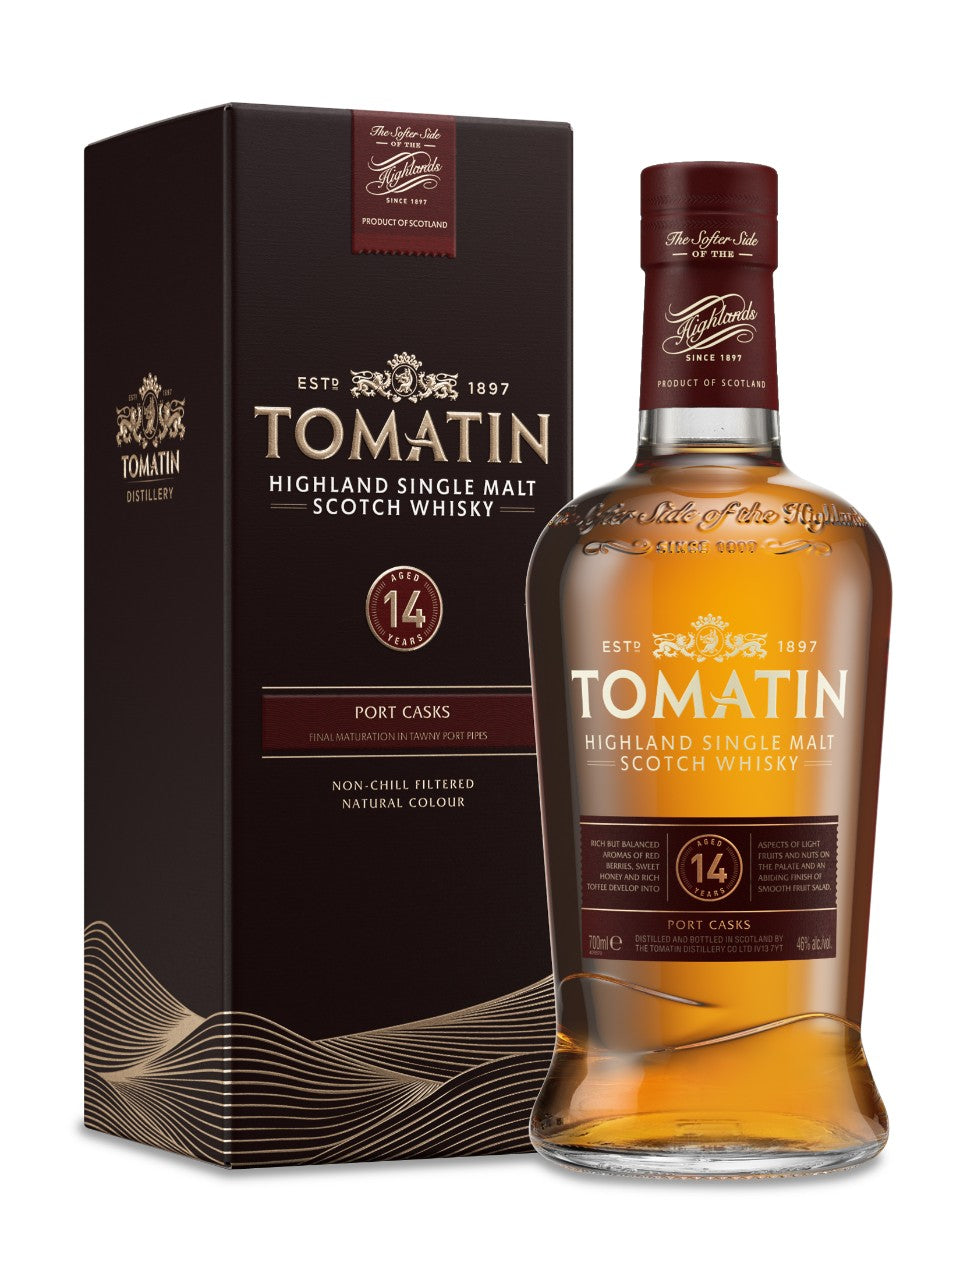 Tomatin 14 Year Old Portwood Highland Single Malt Scotch Whisky 750 ml bottle